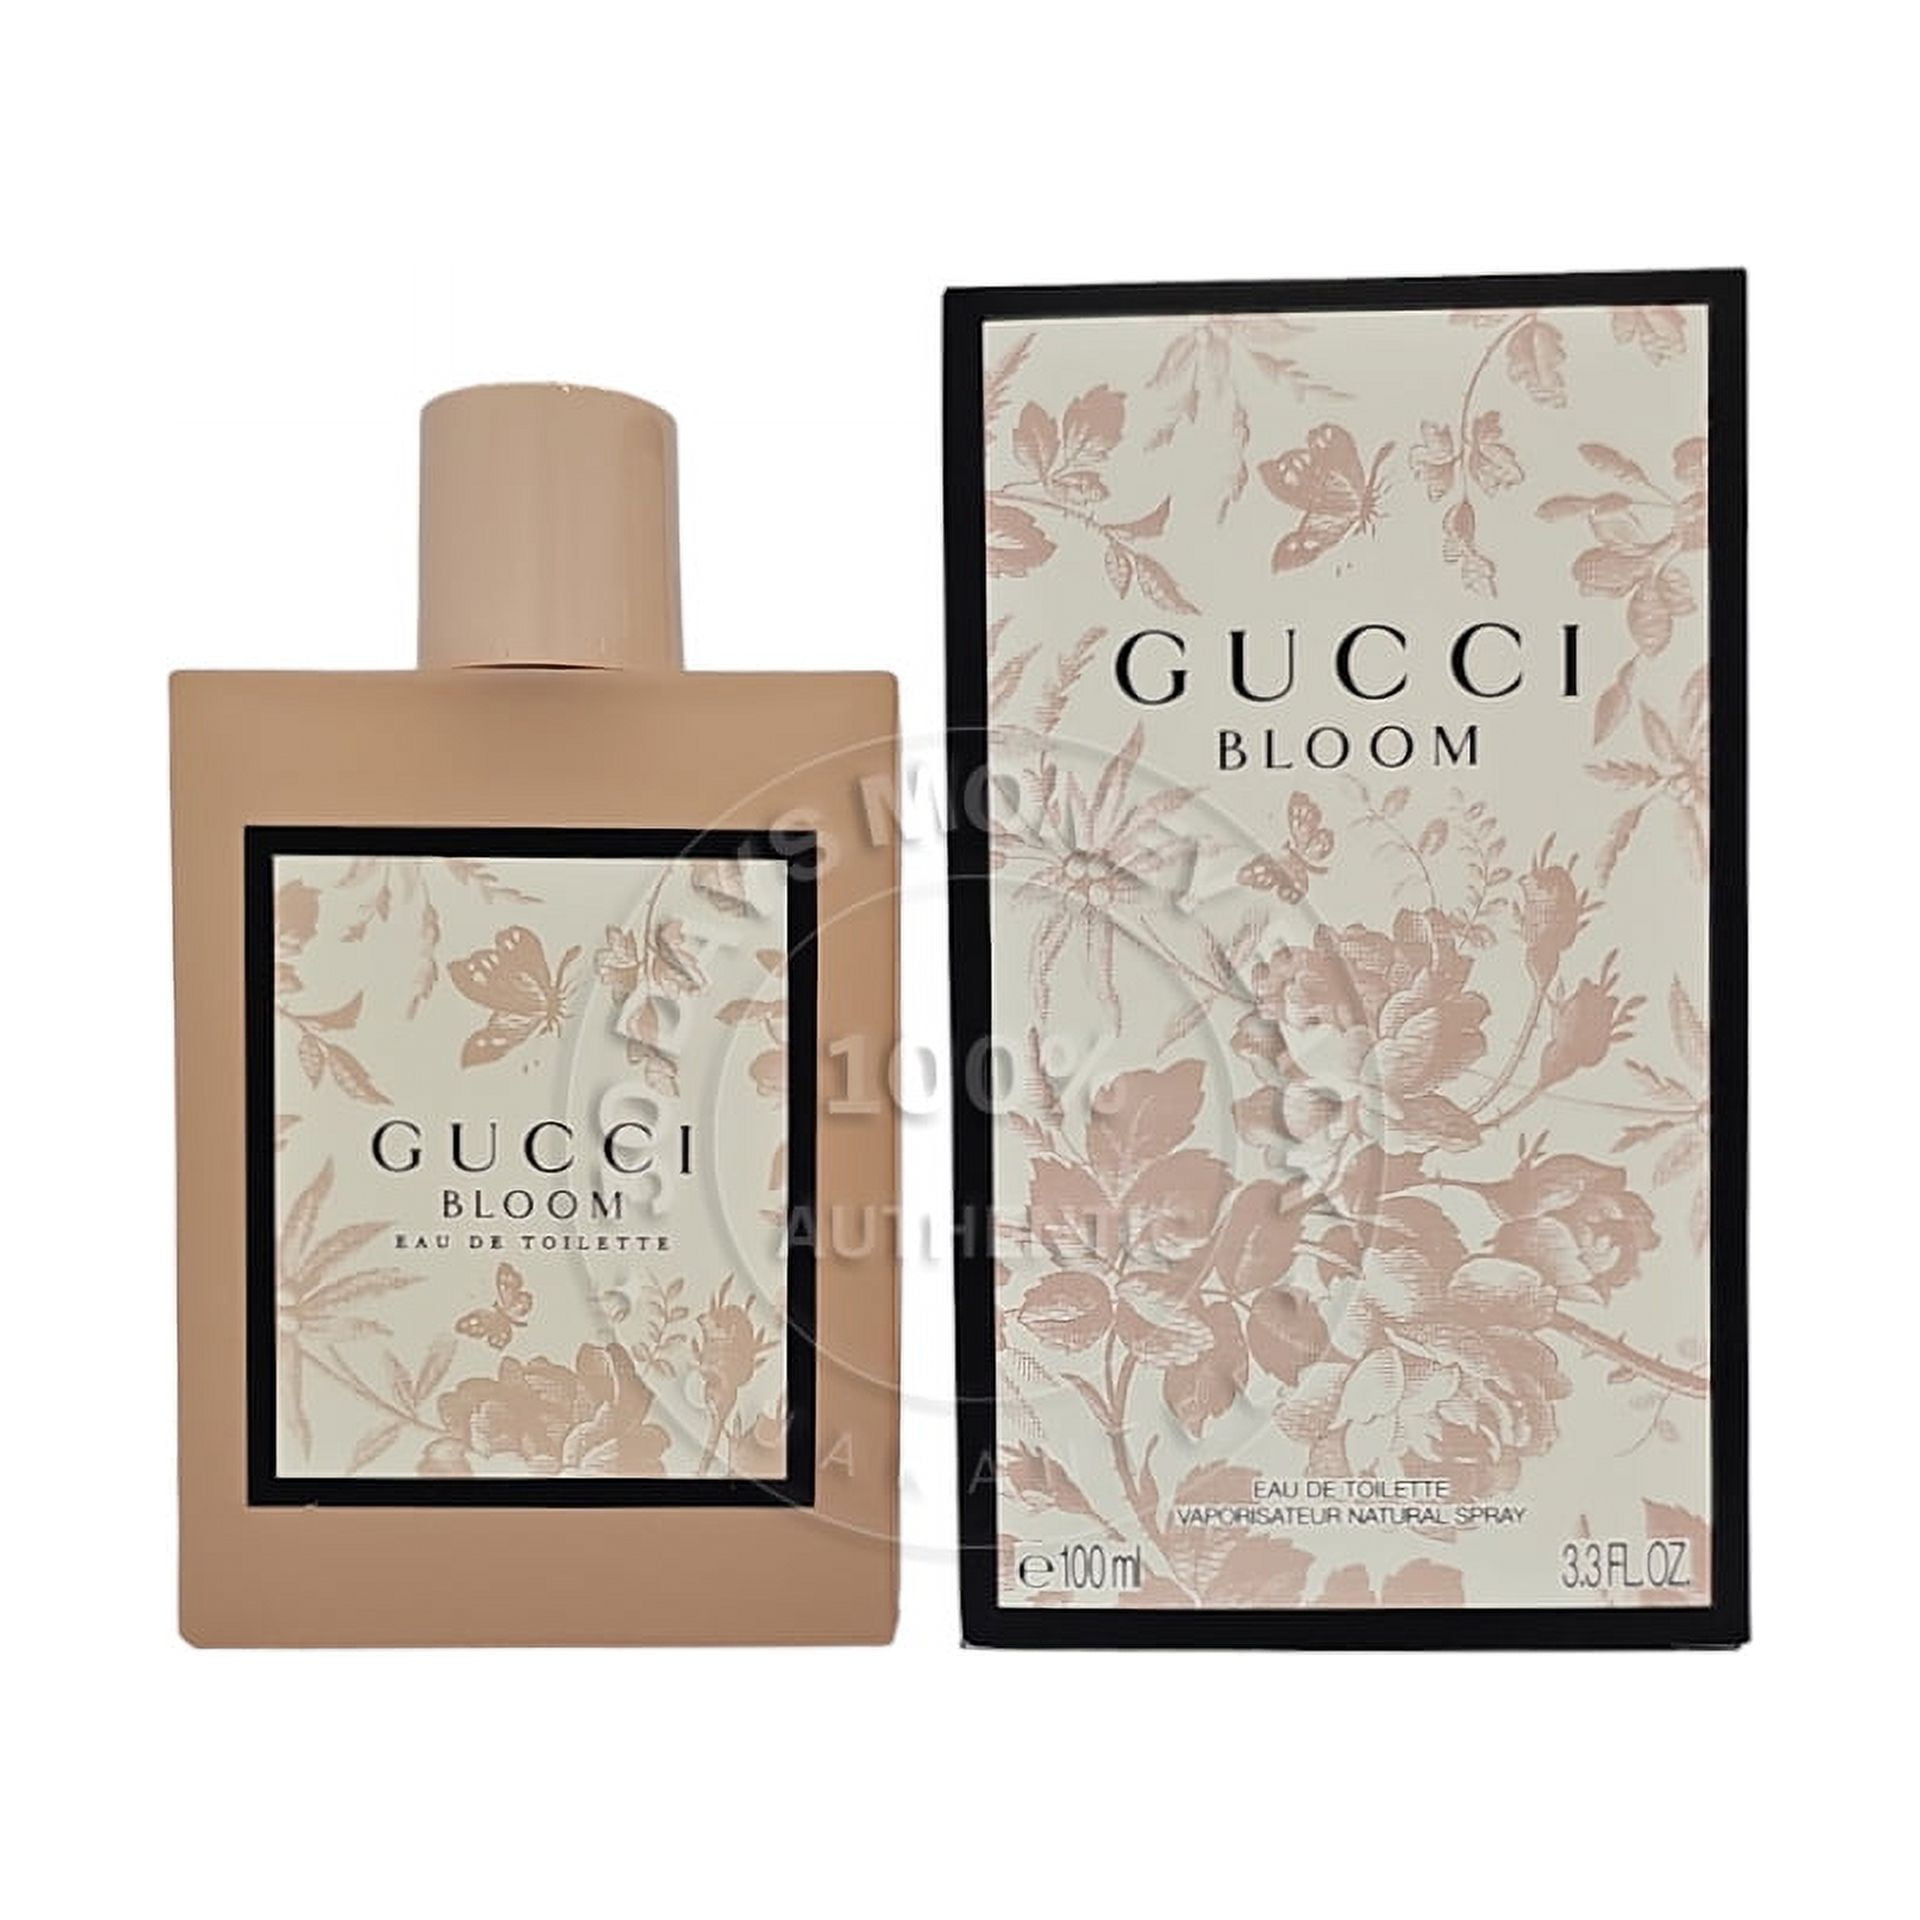 Gucci Bloom by Gucci Eau de Parfum Spray 3.3 oz (Deluxe Edition)